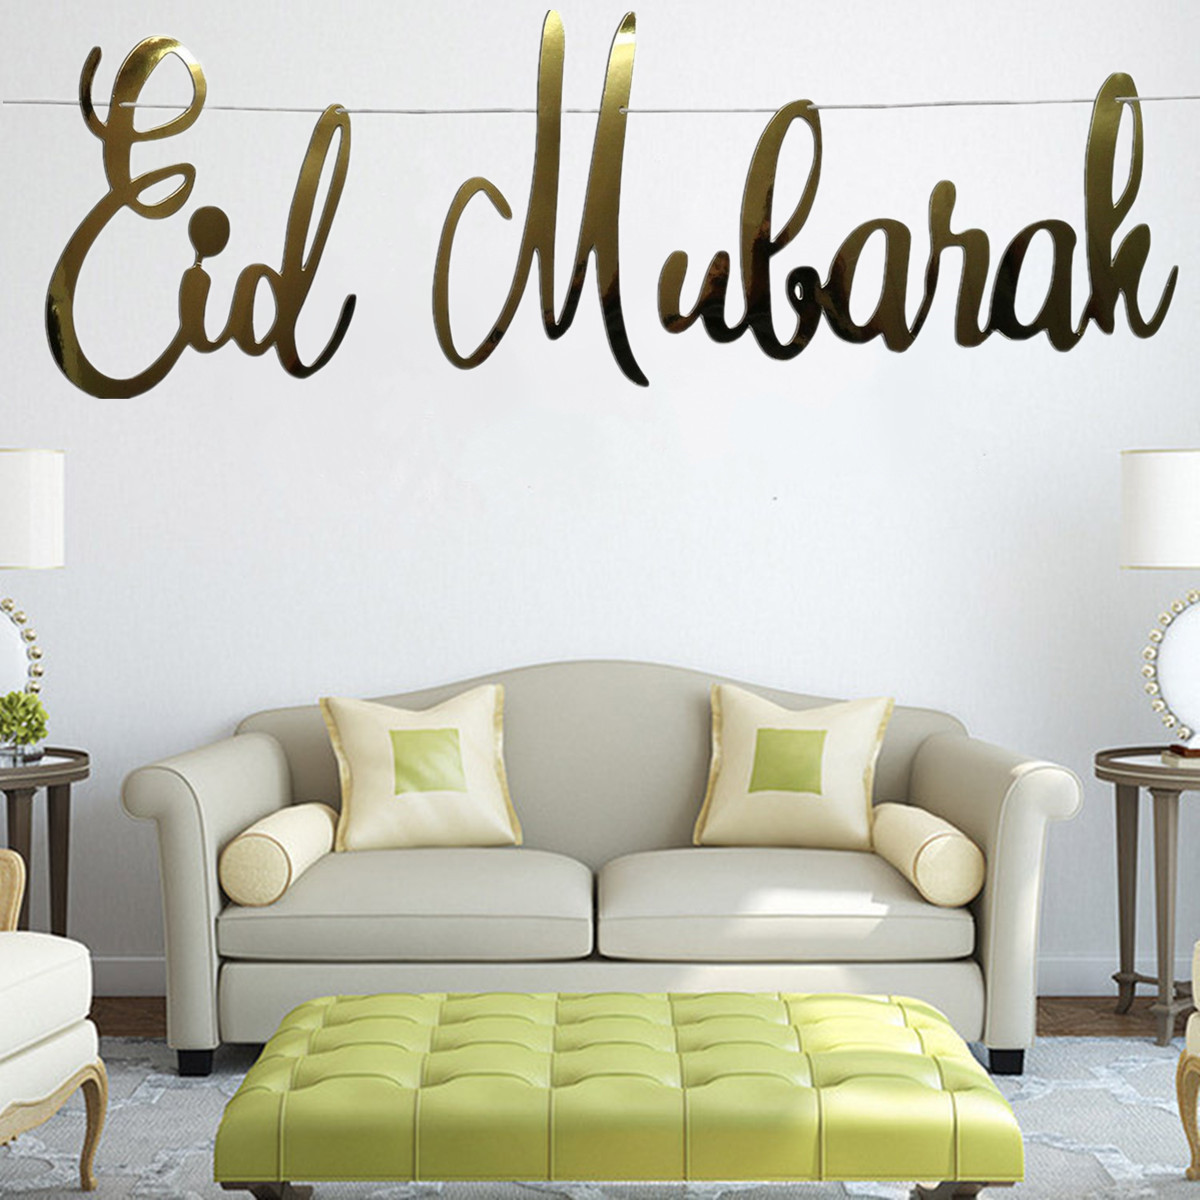 Eid-Mubarak-Ramadan-Kareem-Islam-Pennant-Bunting-Home-Party-Banner-Decorations-1632760-2